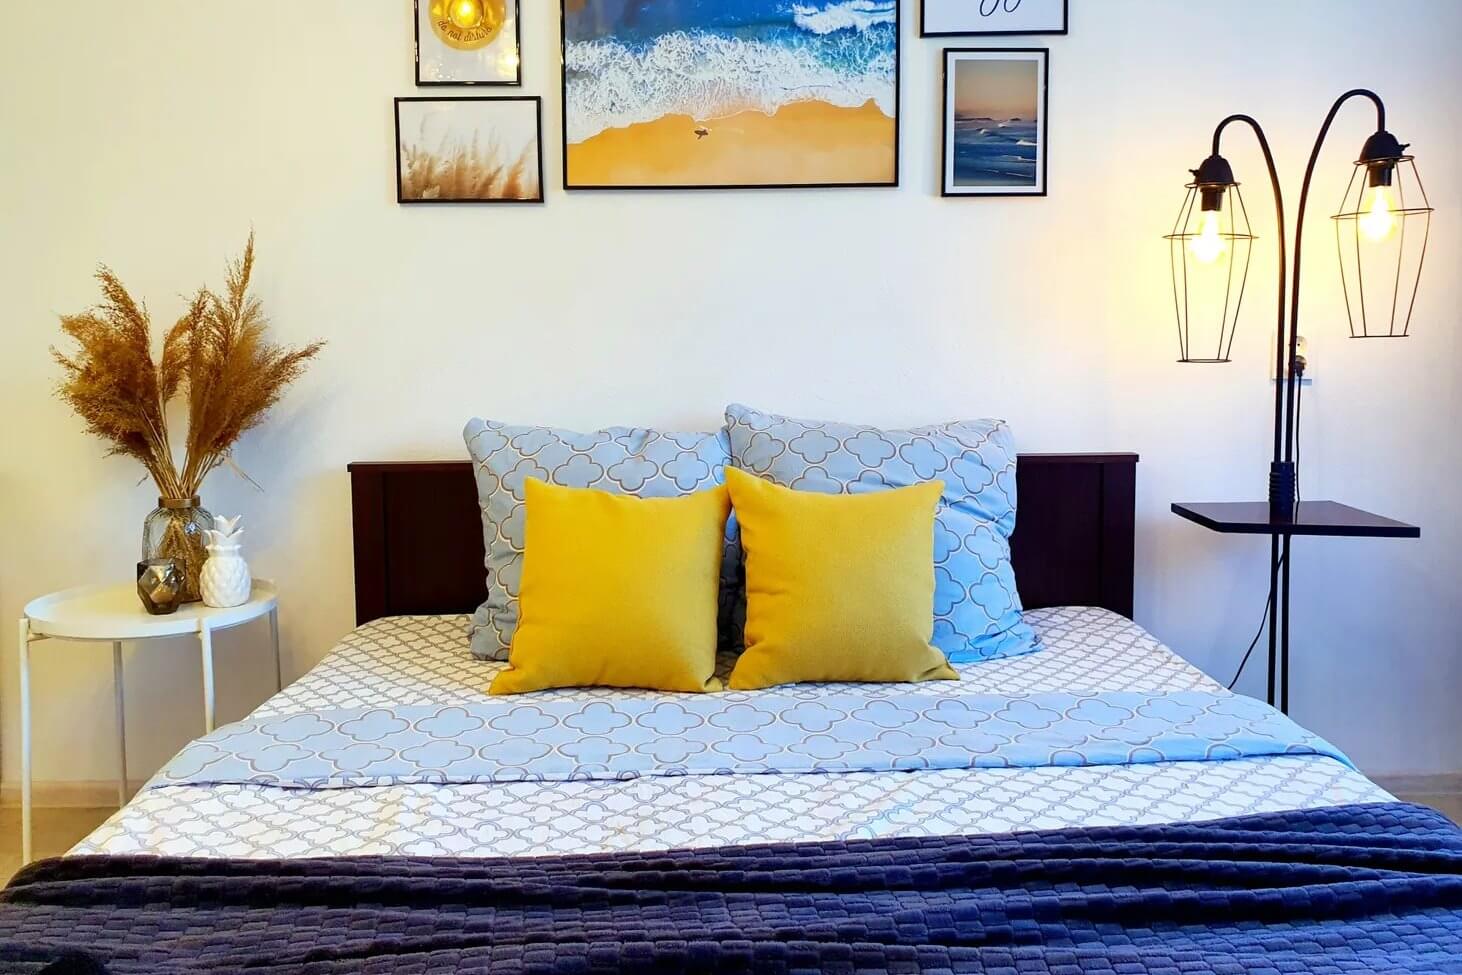 Интерьер спальни: ваза с сухостоями, картины над изголовьем кровати и оригинальной формы светильник. В центре кровати - две яркие желтые подушки.